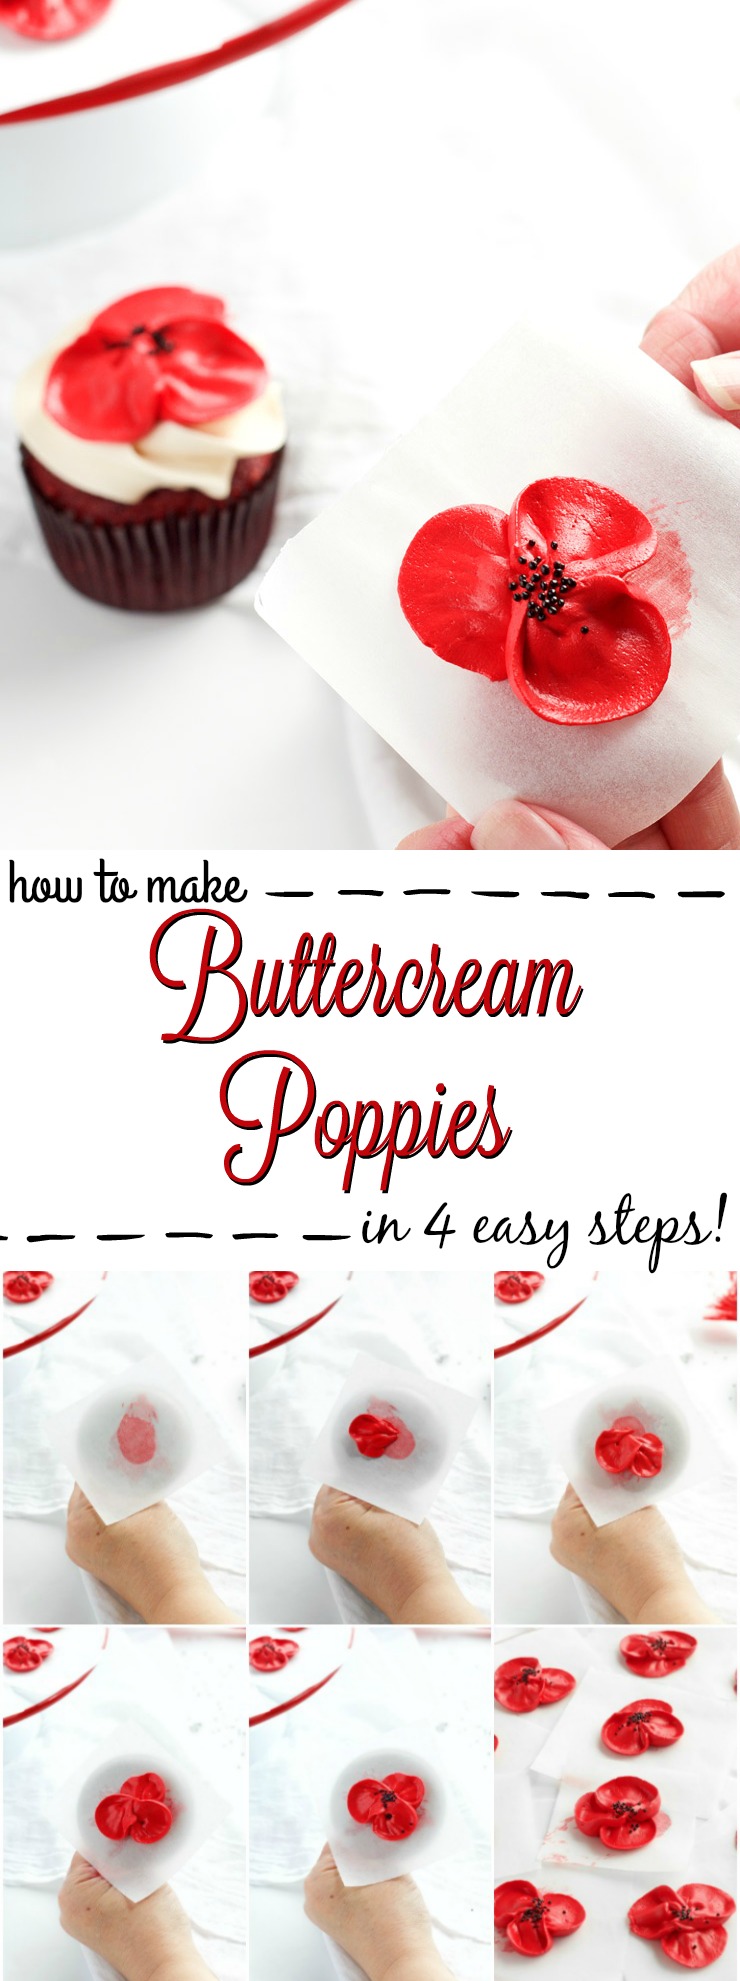 How to Make Buttercream Poppy Flowers in 4 Easy Steps | The Bearfoot Baker